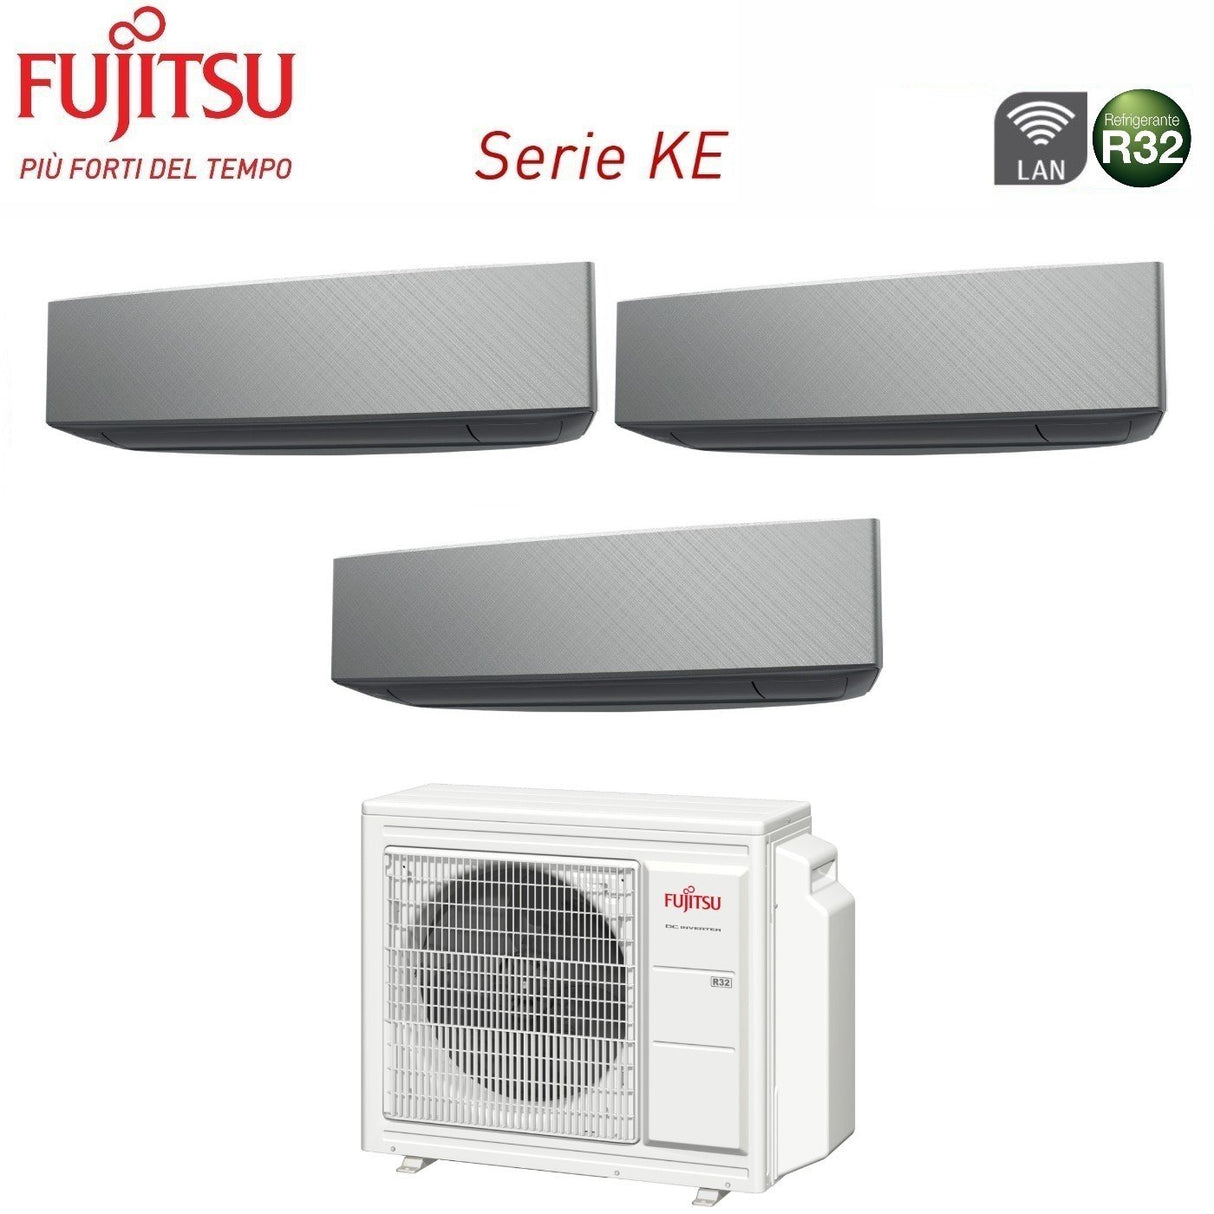 immagine-2-fujitsu-climatizzatore-condizionatore-fujitsu-trial-split-inverter-serie-ke-silver-777-con-aoyg24kbta3-r-32-wi-fi-integrato-700070007000-colore-bianco